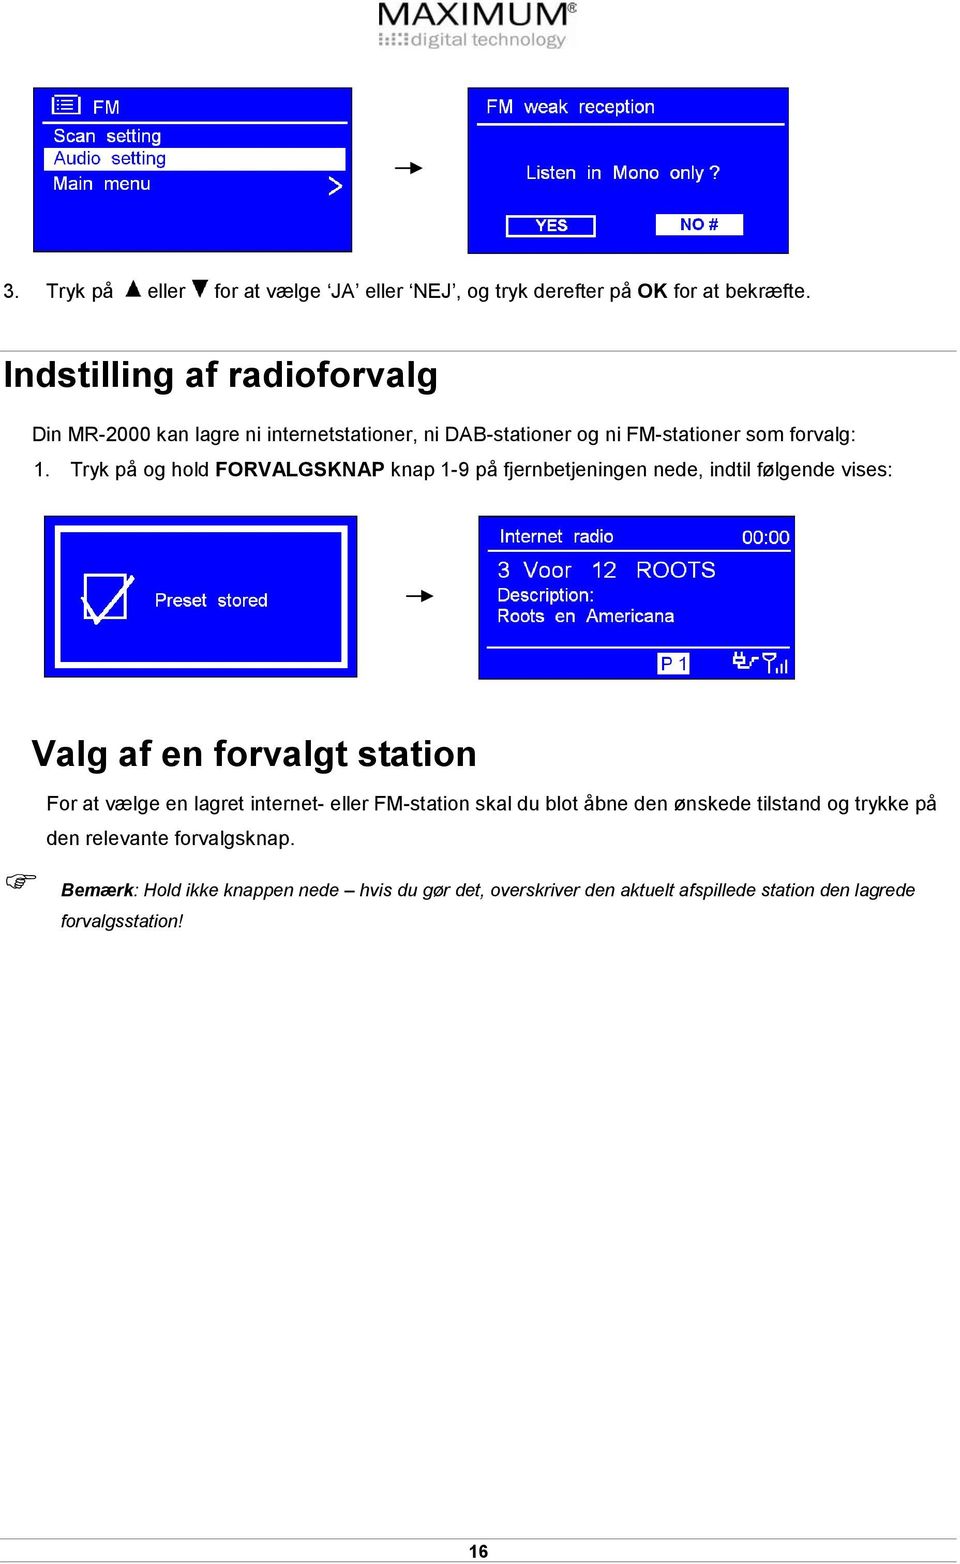 Tryk på og hold FORVALGSKNAP knap 1-9 på fjernbetjeningen nede, indtil følgende vises: Valg af en forvalgt station For at vælge en lagret